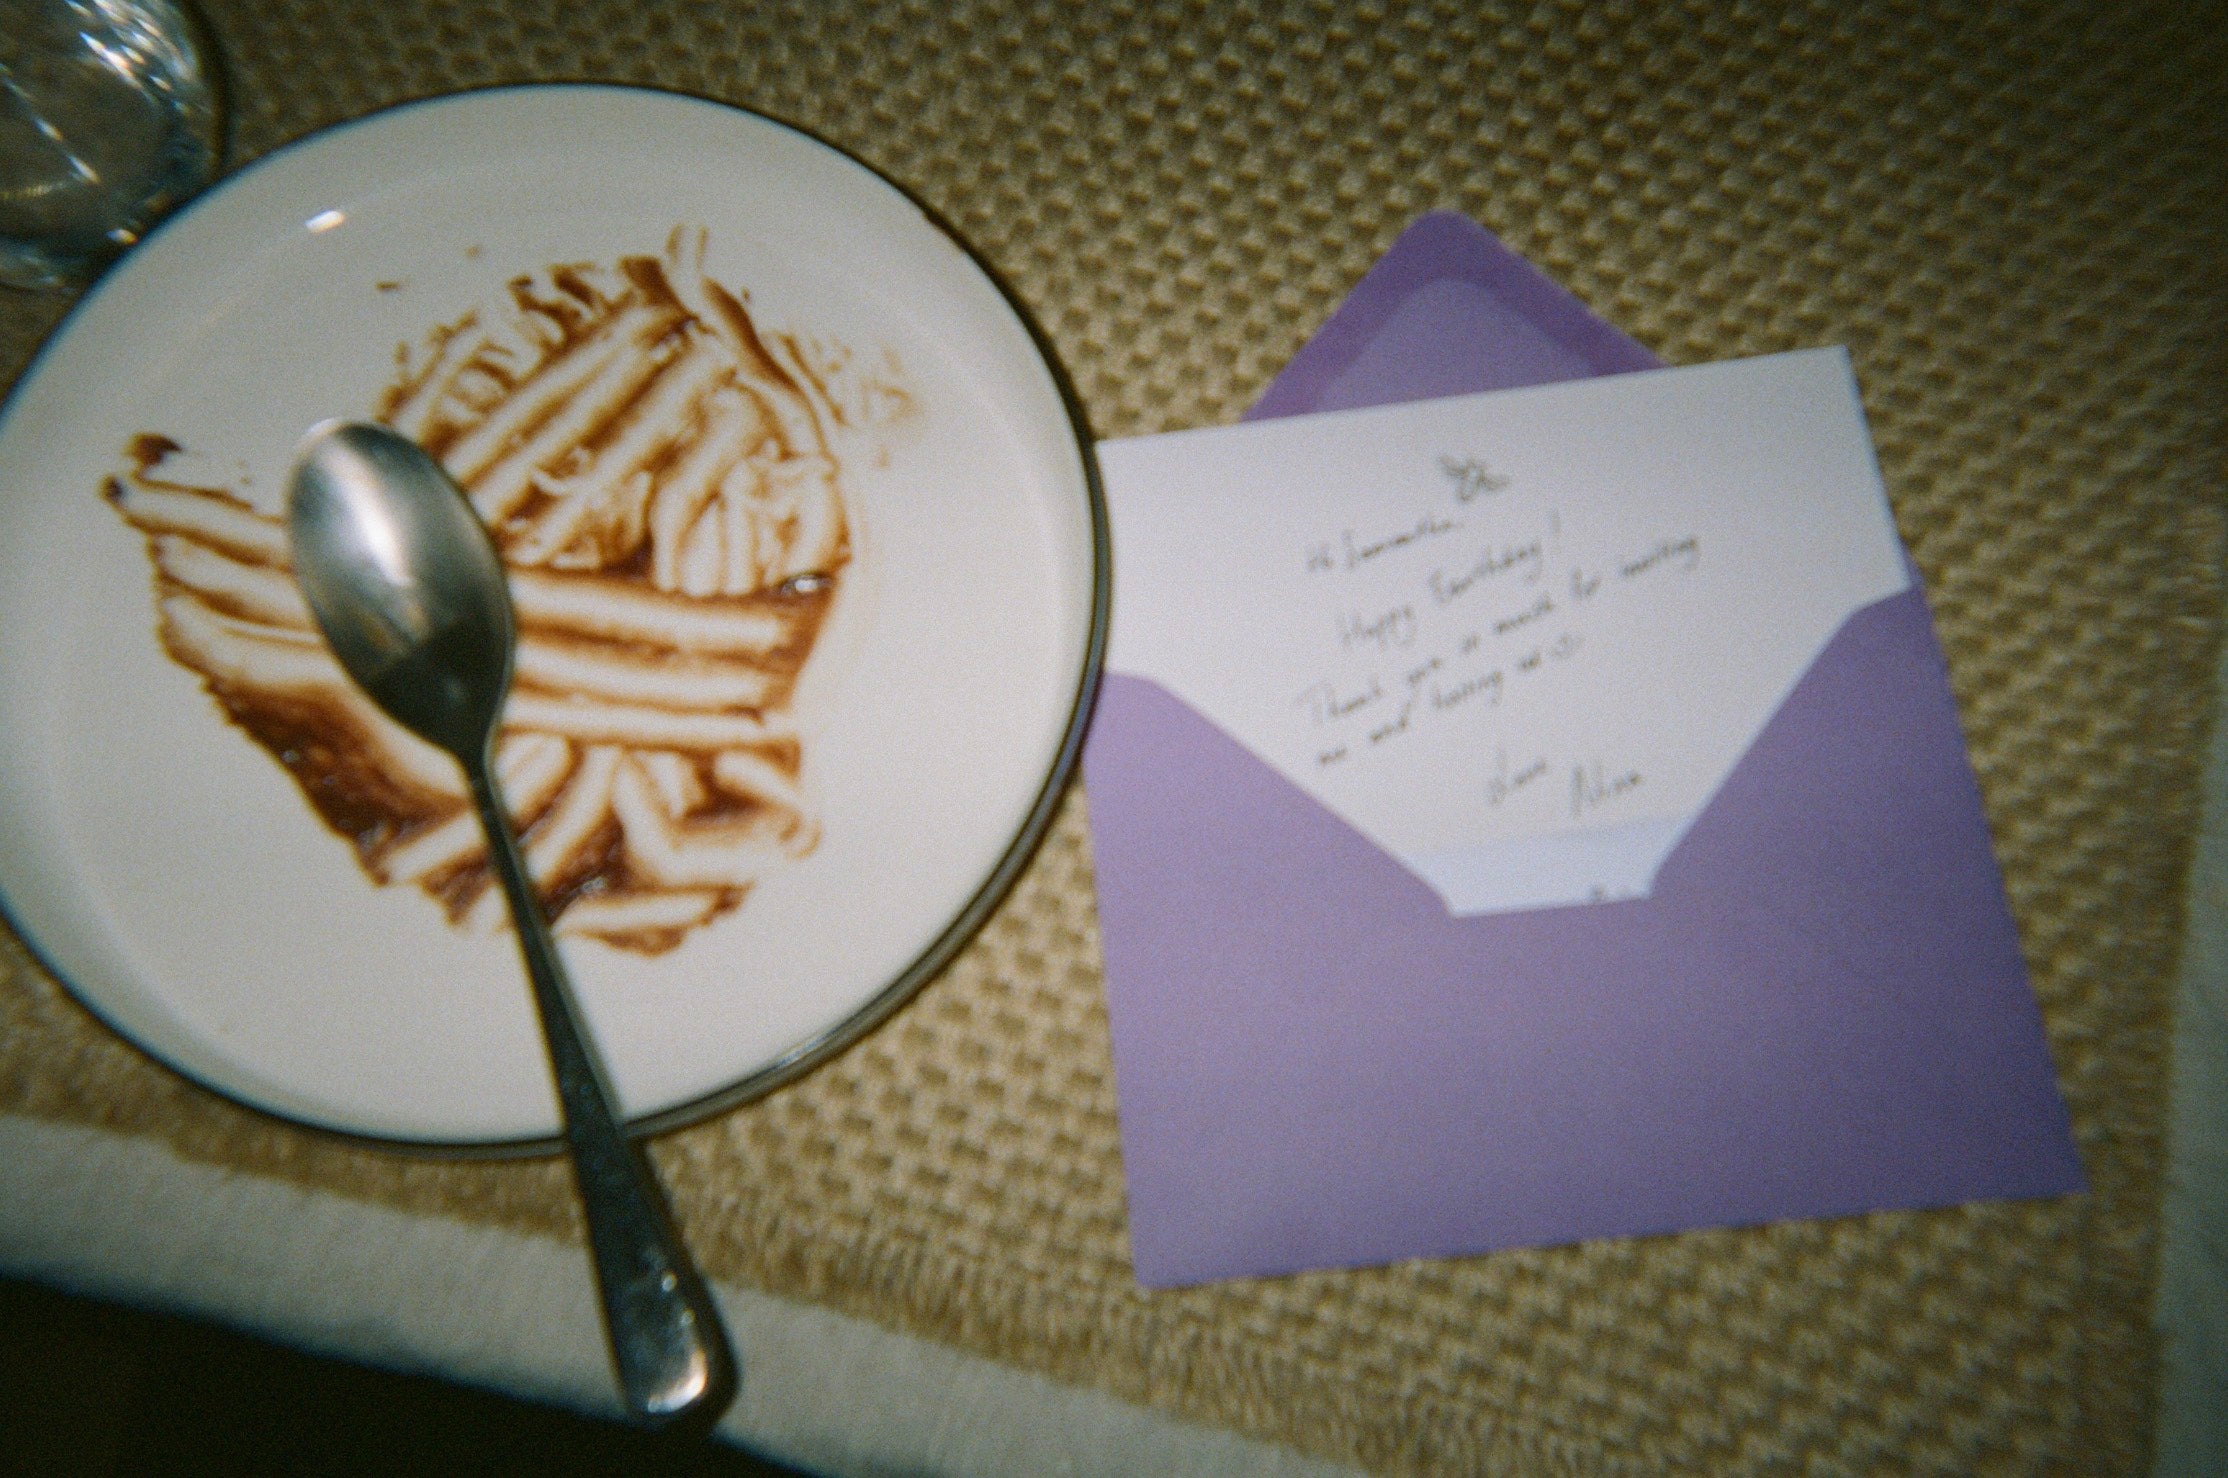 a hand written note and dessert